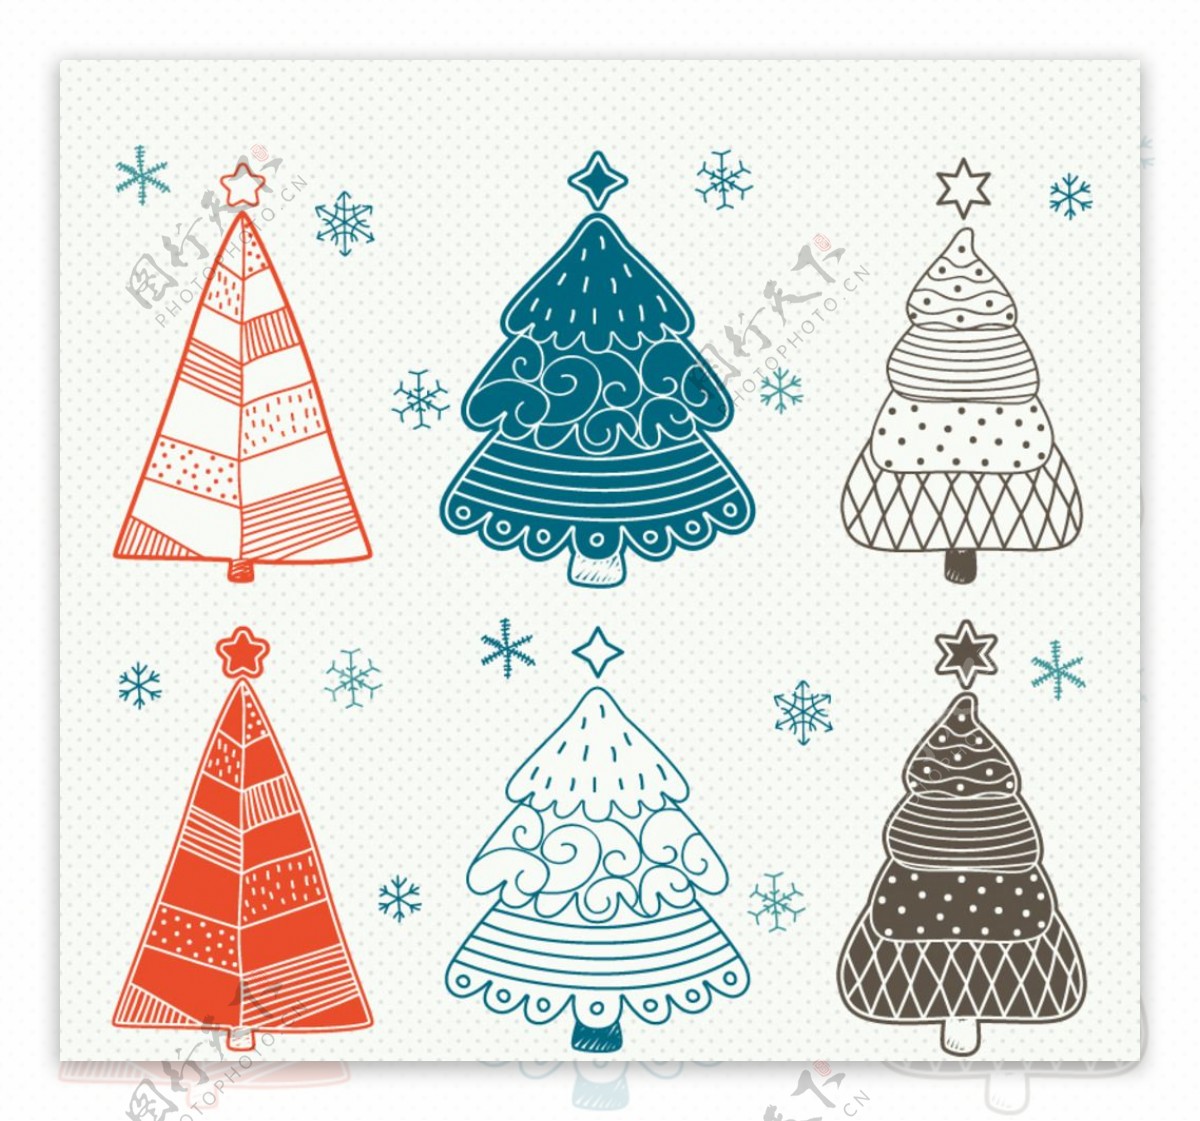 彩绘圣诞树设计矢量素材